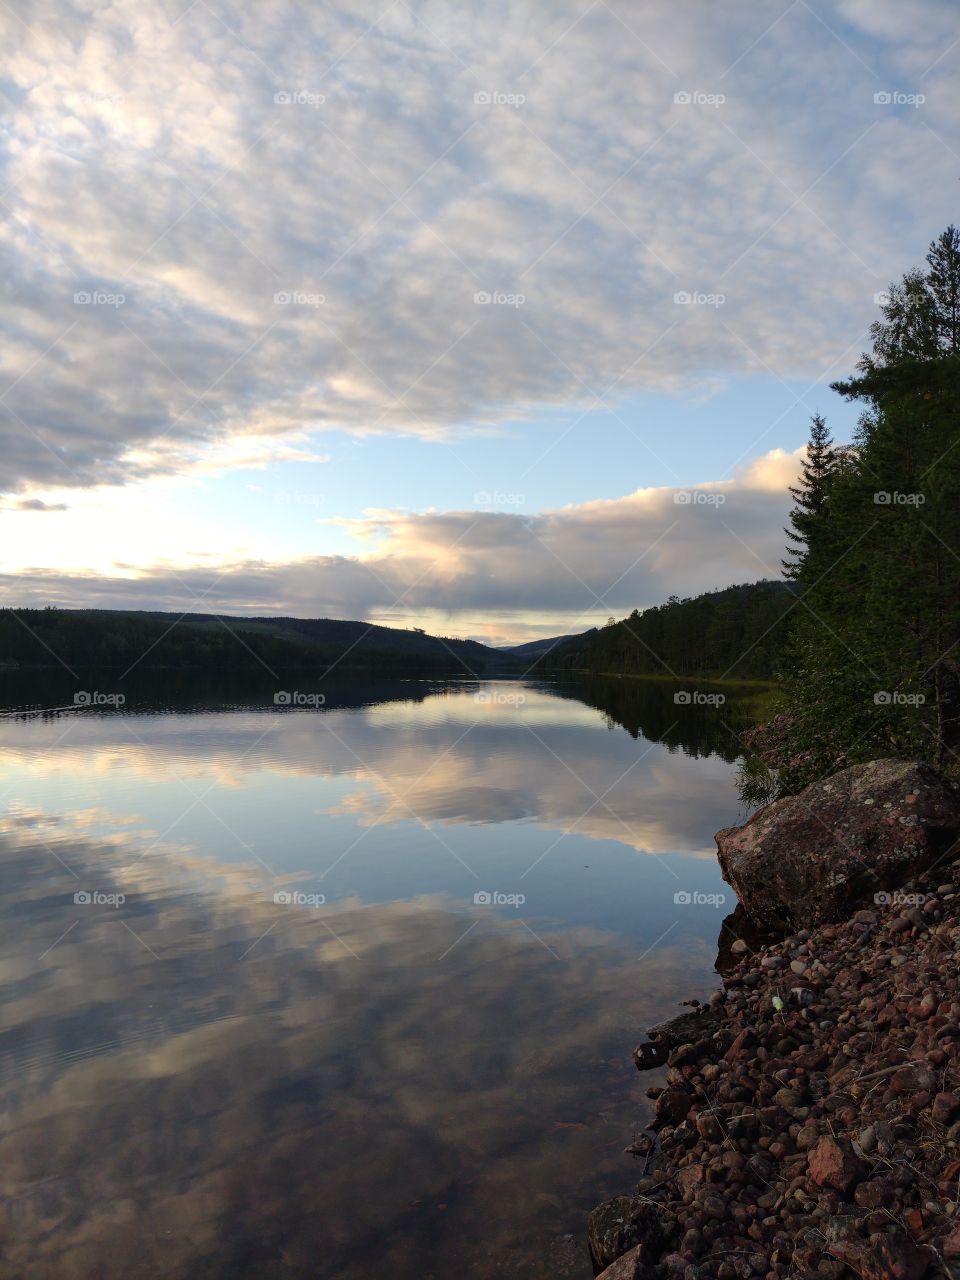 Swedish nature, lake reflection